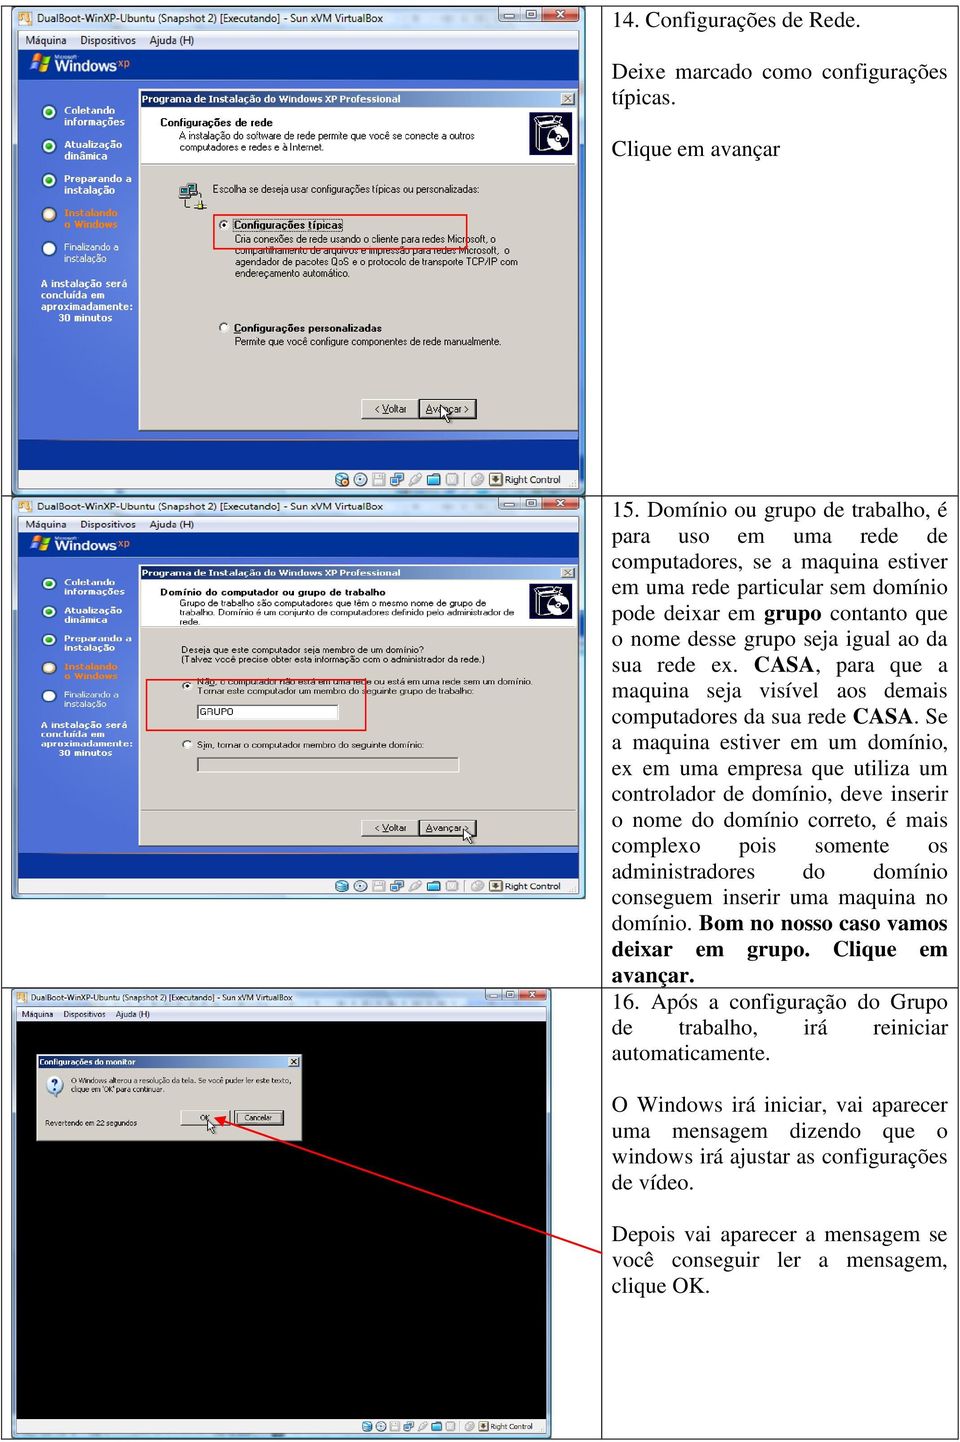 rede ex. CASA, para que a maquina seja visível aos demais computadores da sua rede CASA.